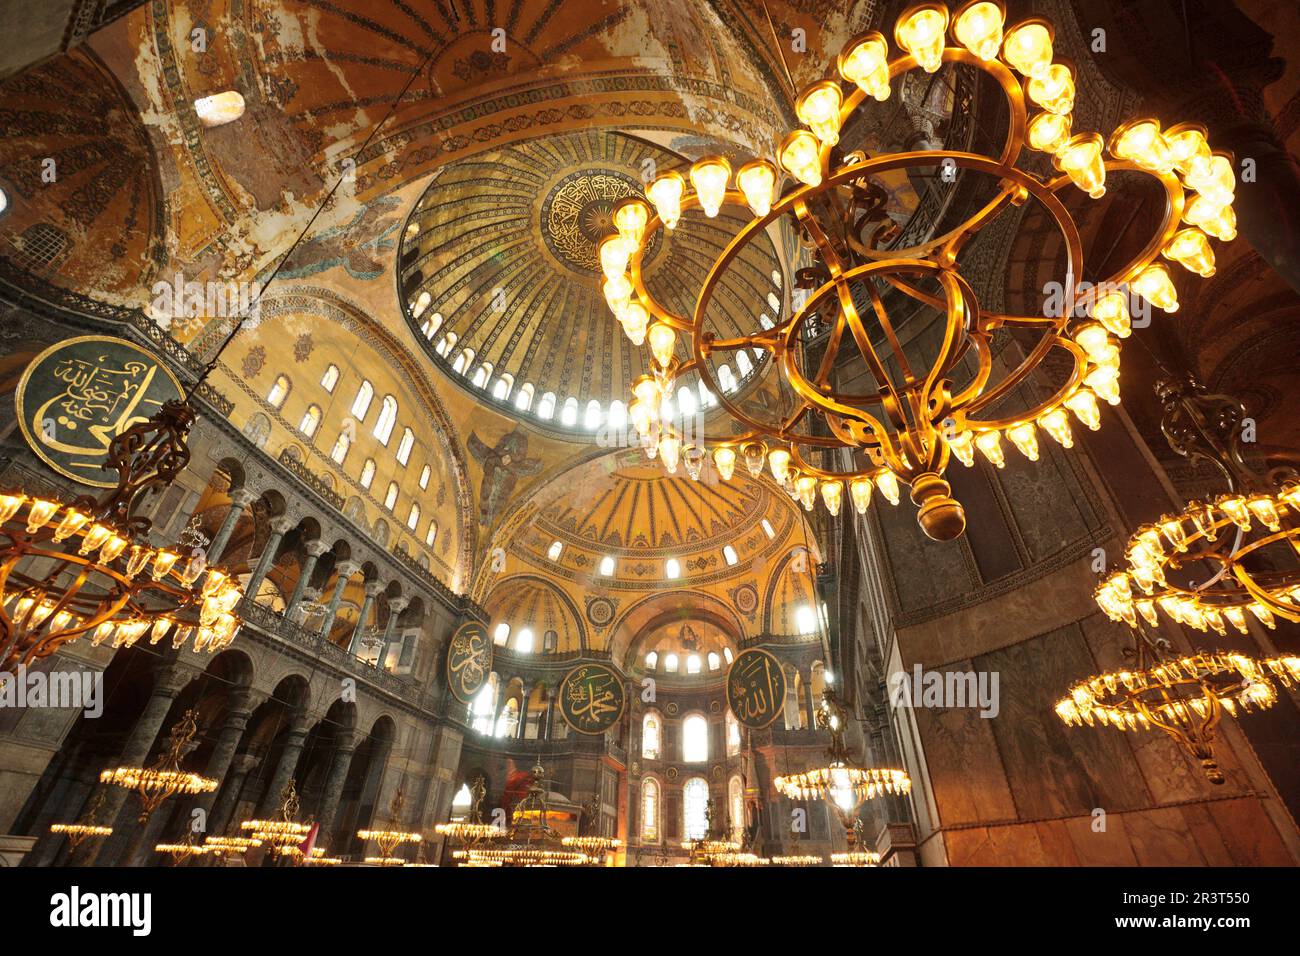 Santa Sofia , iglesia de la santa sabiduria,siglo VI.Sultanahmet. Estambul.Turquia. Asia. Stock Photo